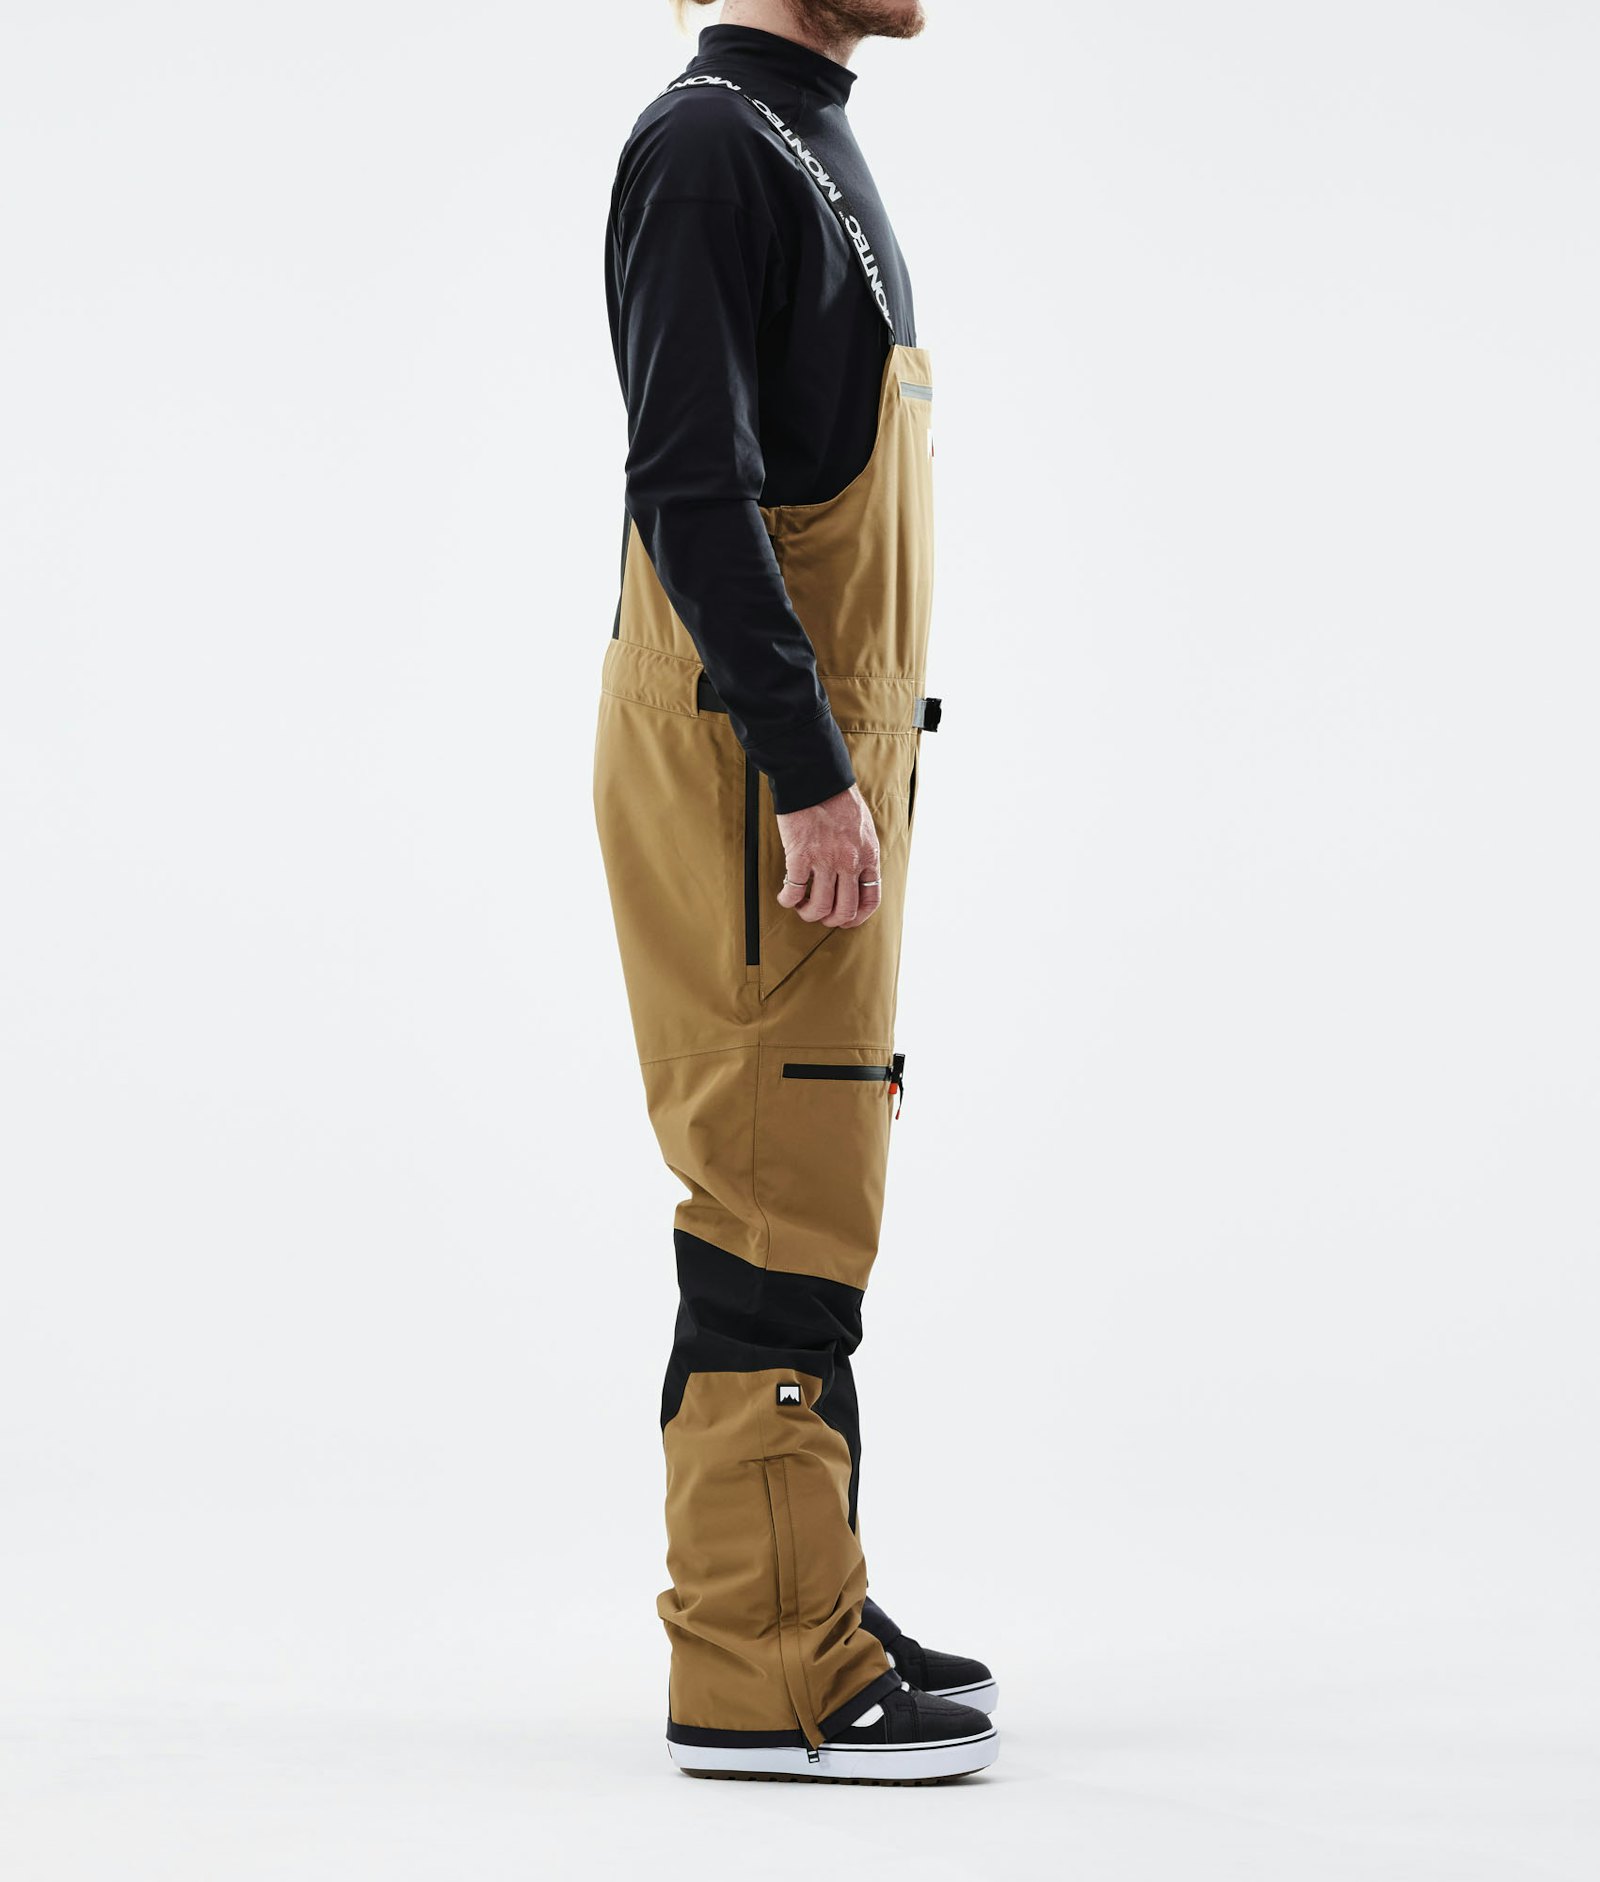 Moss 2021 Kalhoty na Snowboard Pánské Gold/Black